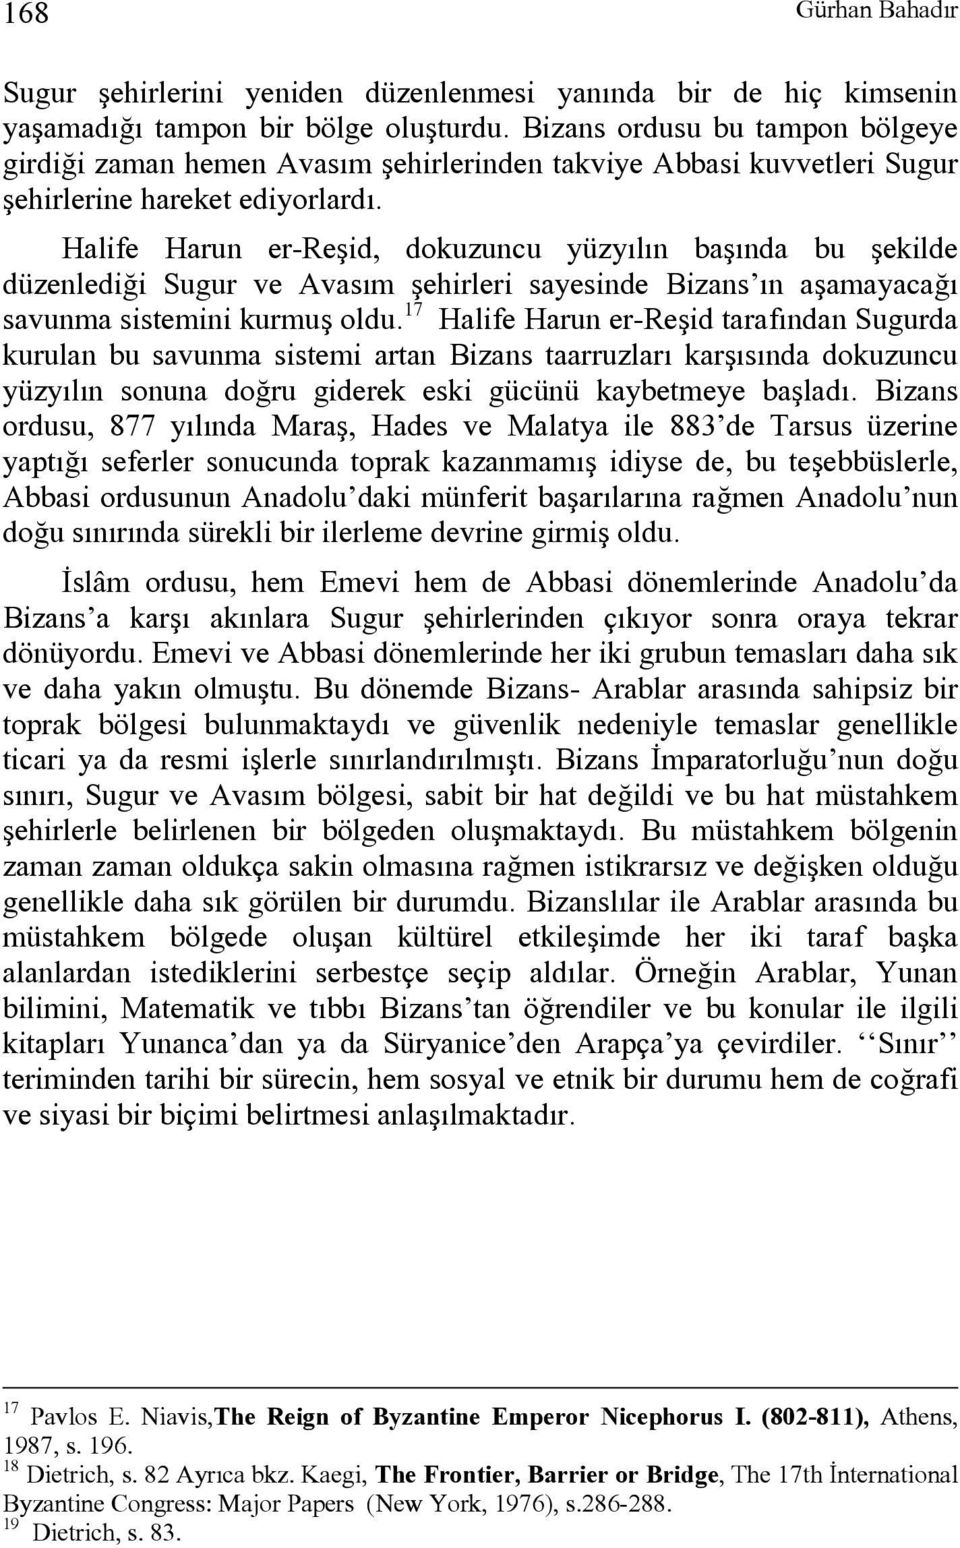 Halife Harun er-reşid, dokuzuncu yüzyılın başında bu şekilde düzenlediği Sugur ve Avasım şehirleri sayesinde Bizans ın aşamayacağı savunma sistemini kurmuş oldu.